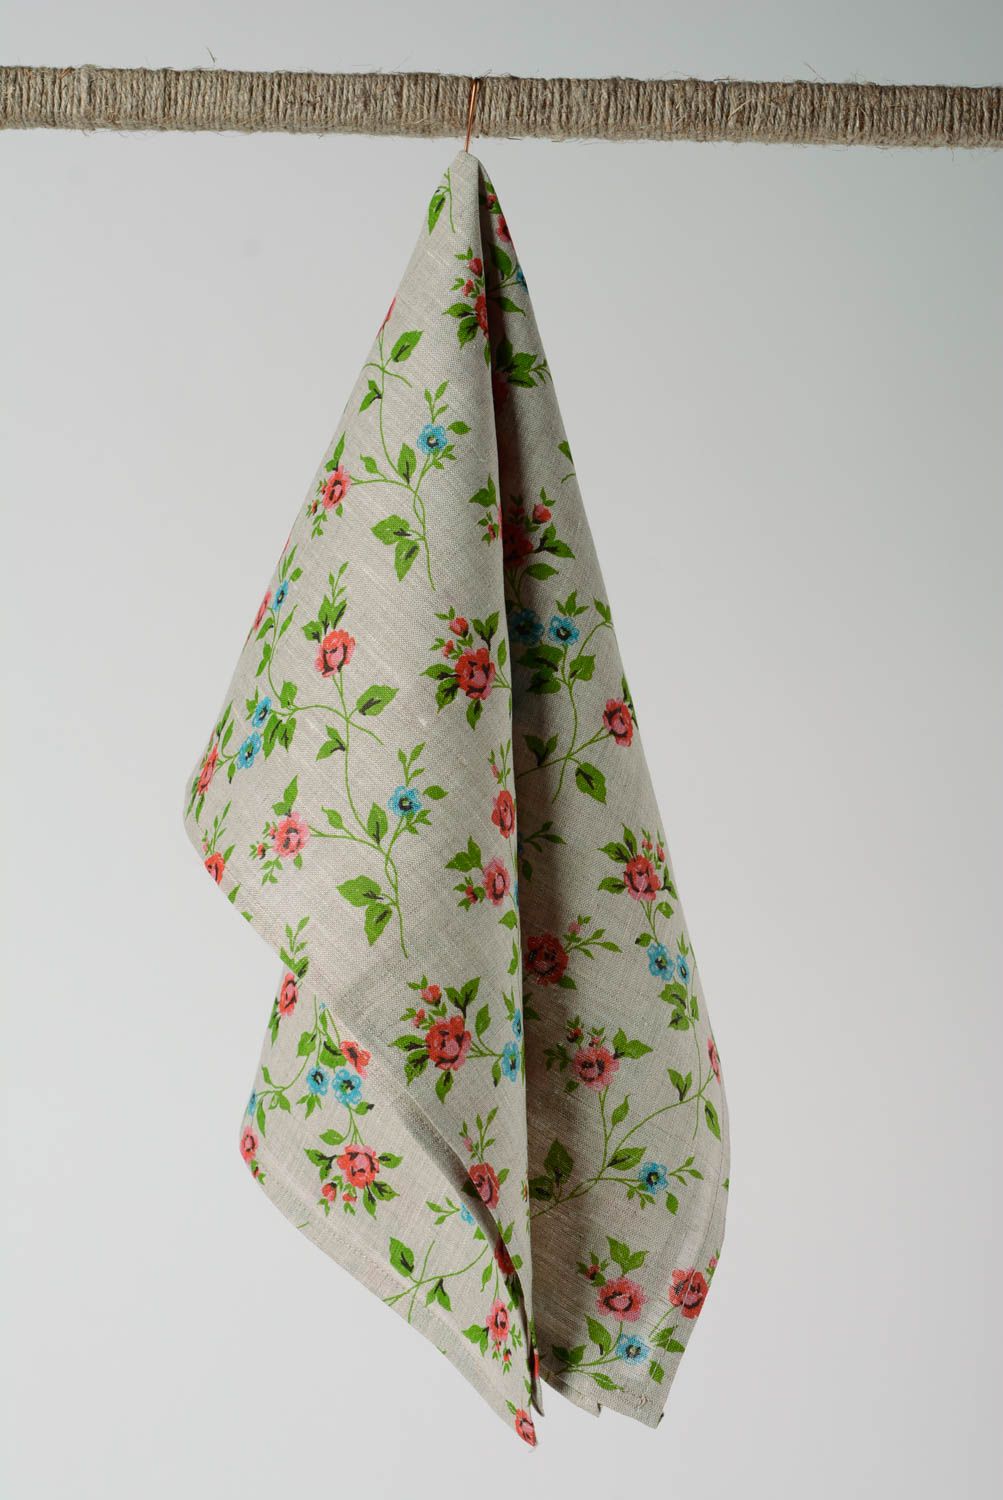 Petite serviette de cuisine en tissu de lin grise aux motifs floraux fate main  photo 1